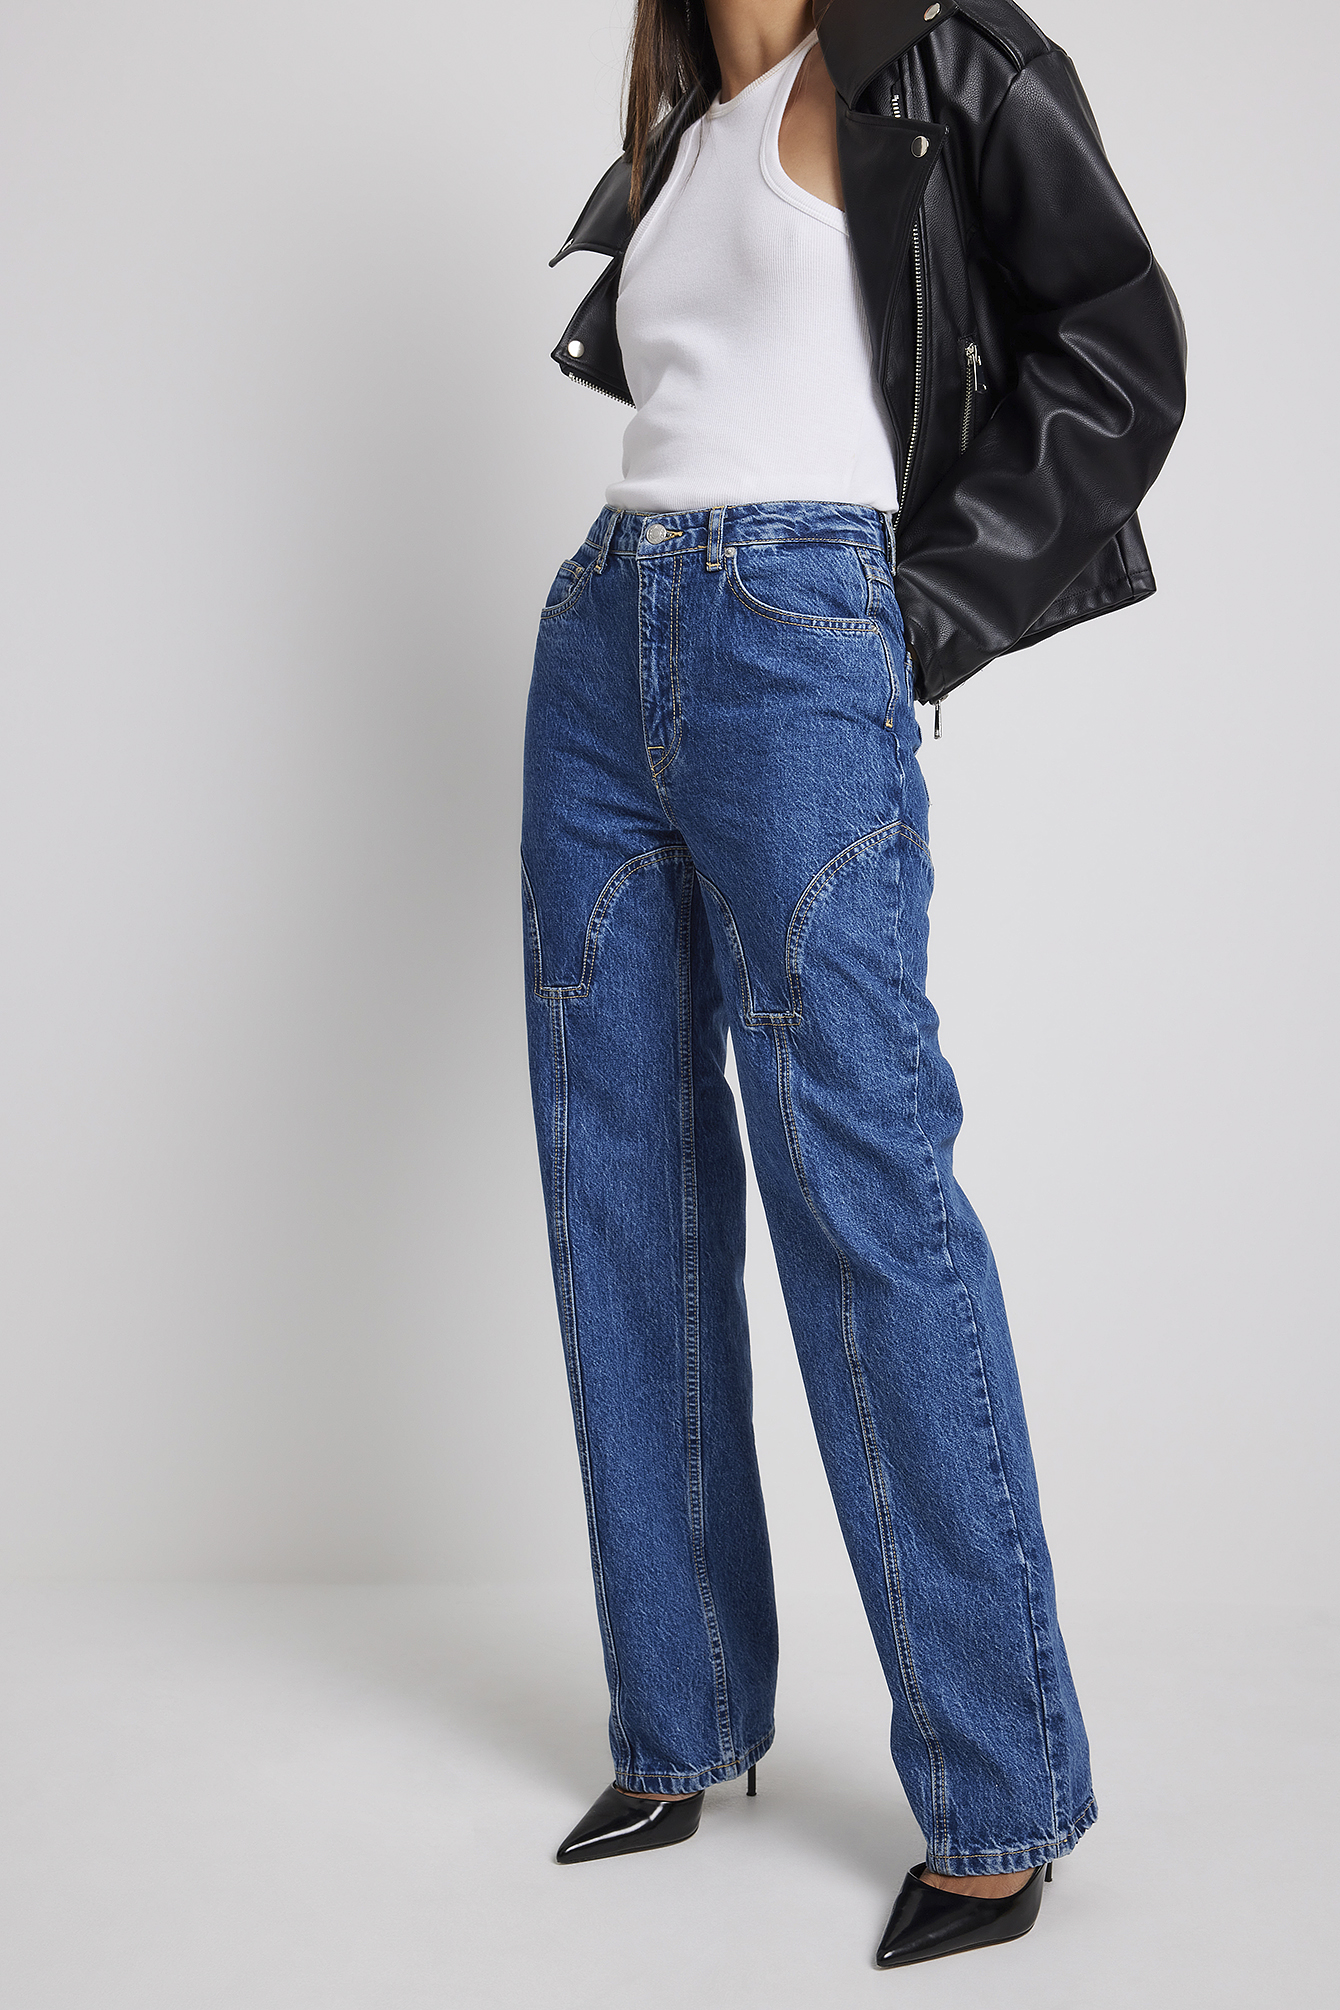 Mid Blue Wash Jeans Detail Denim Halterneck Top